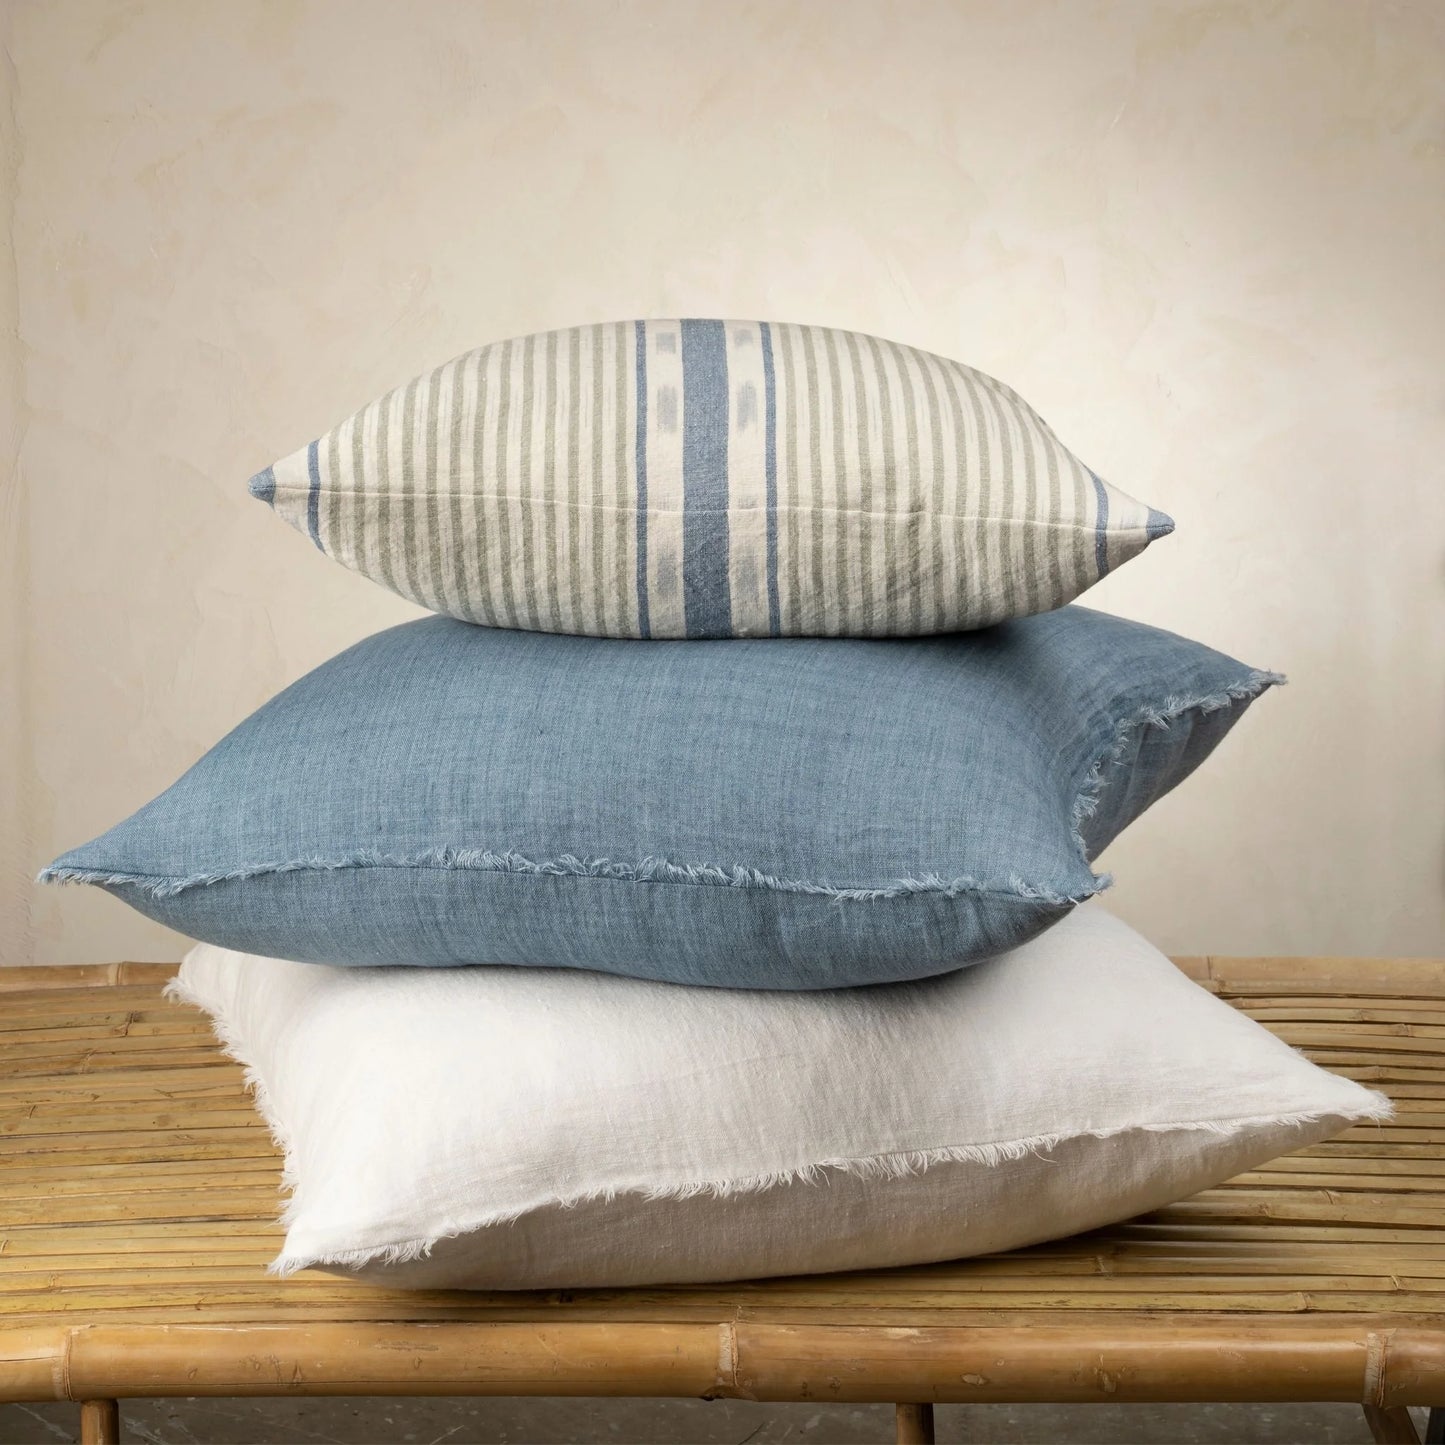 Seaview Linen Pillow